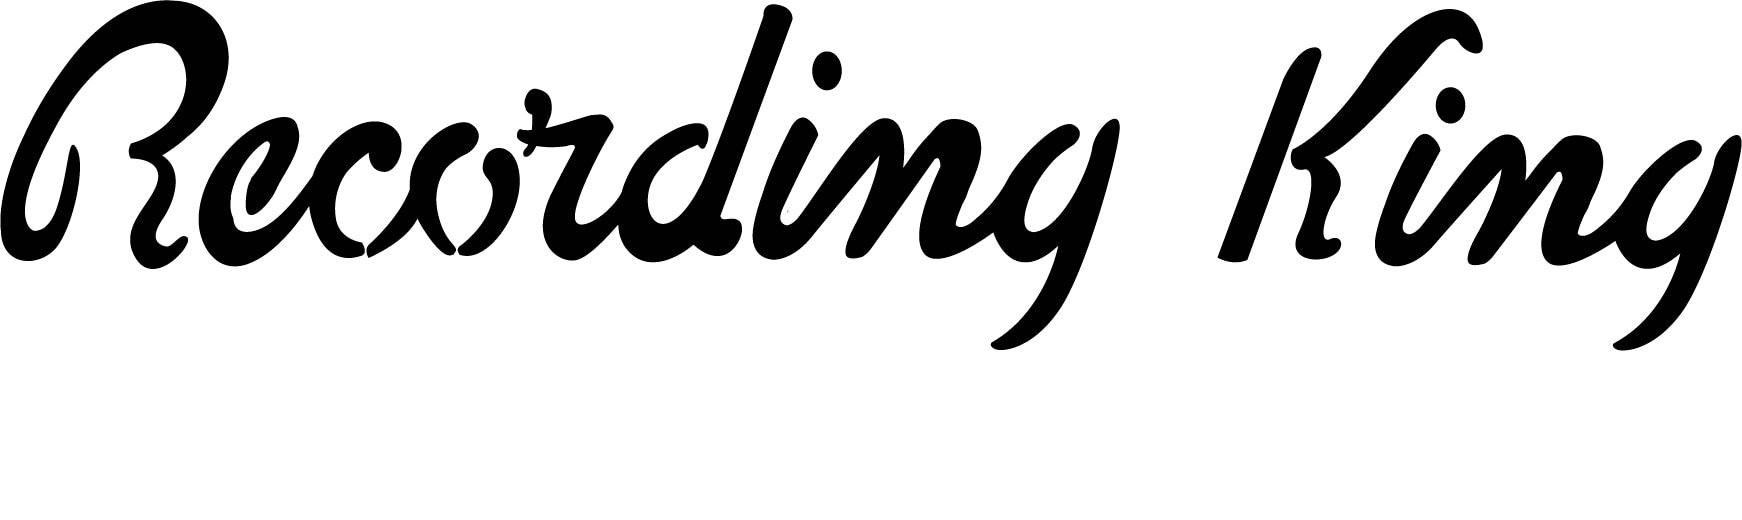 Recording King Logo